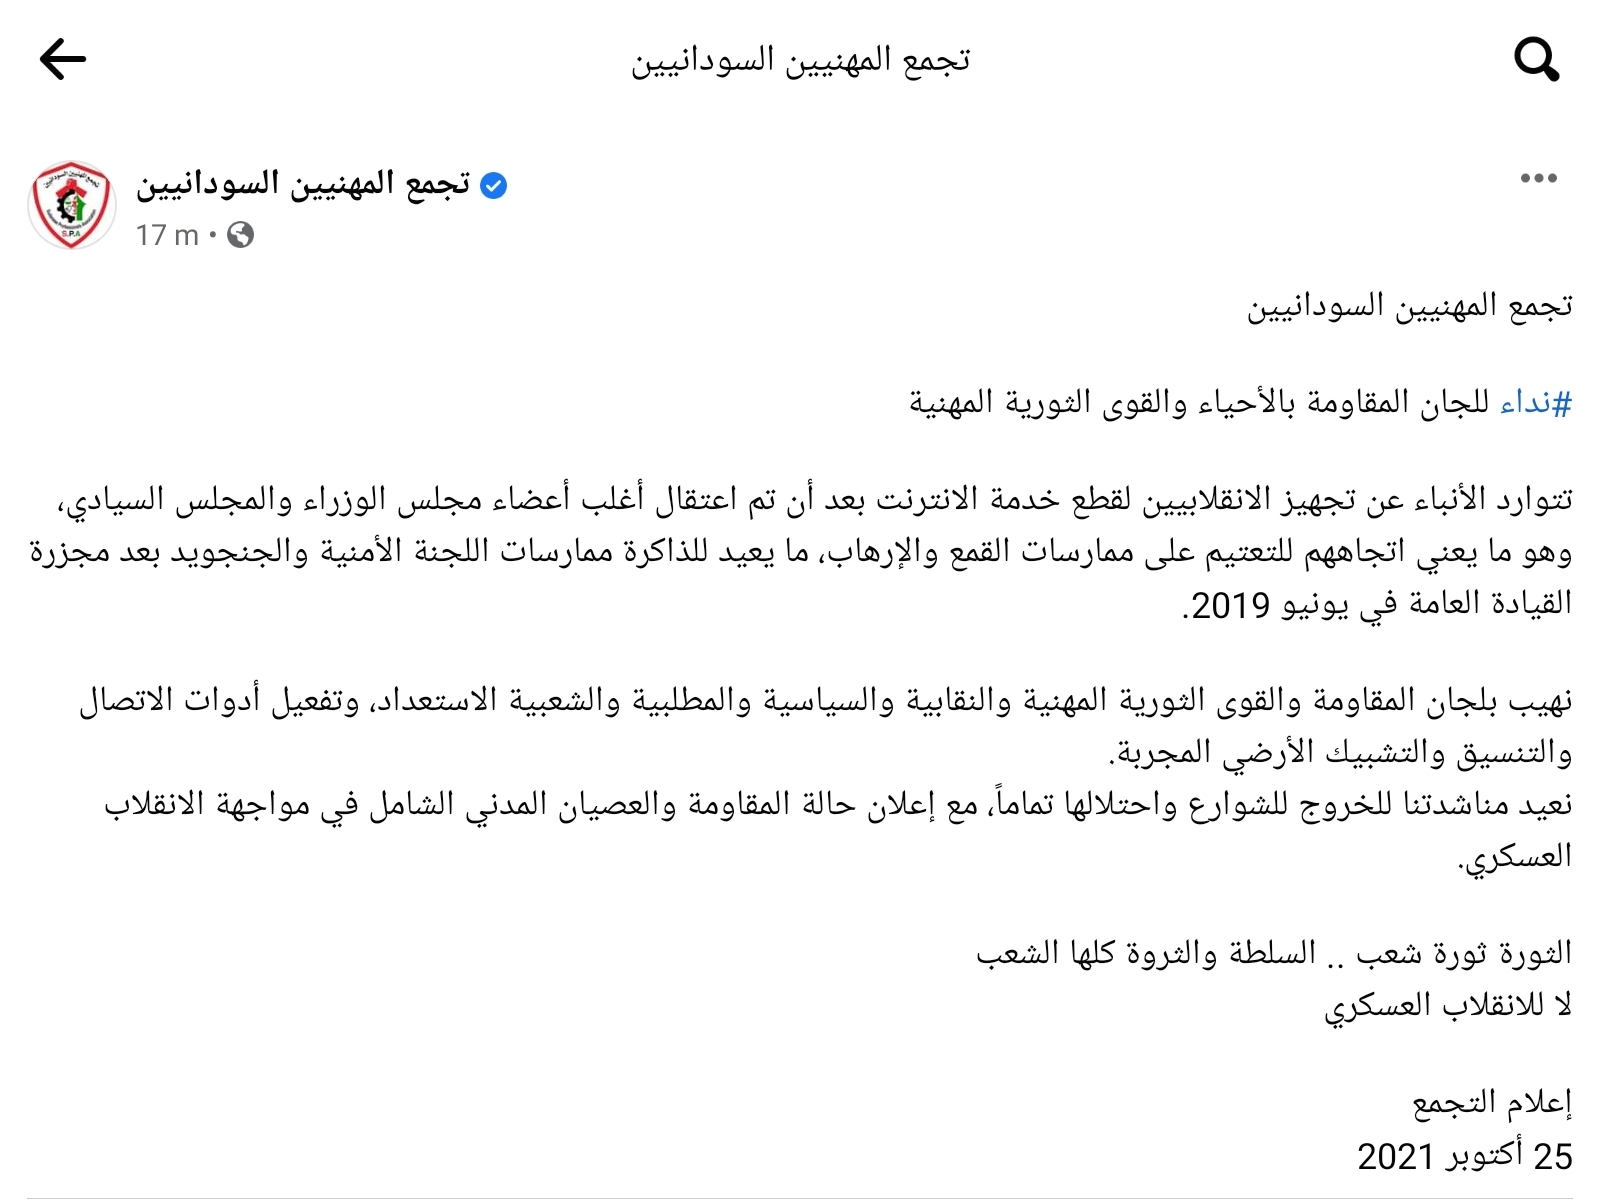 أنباء عن وضع رئيس الوزراء السوداني عبد الله حمدوك تحت الإقامة الجبرية بمنزله 2